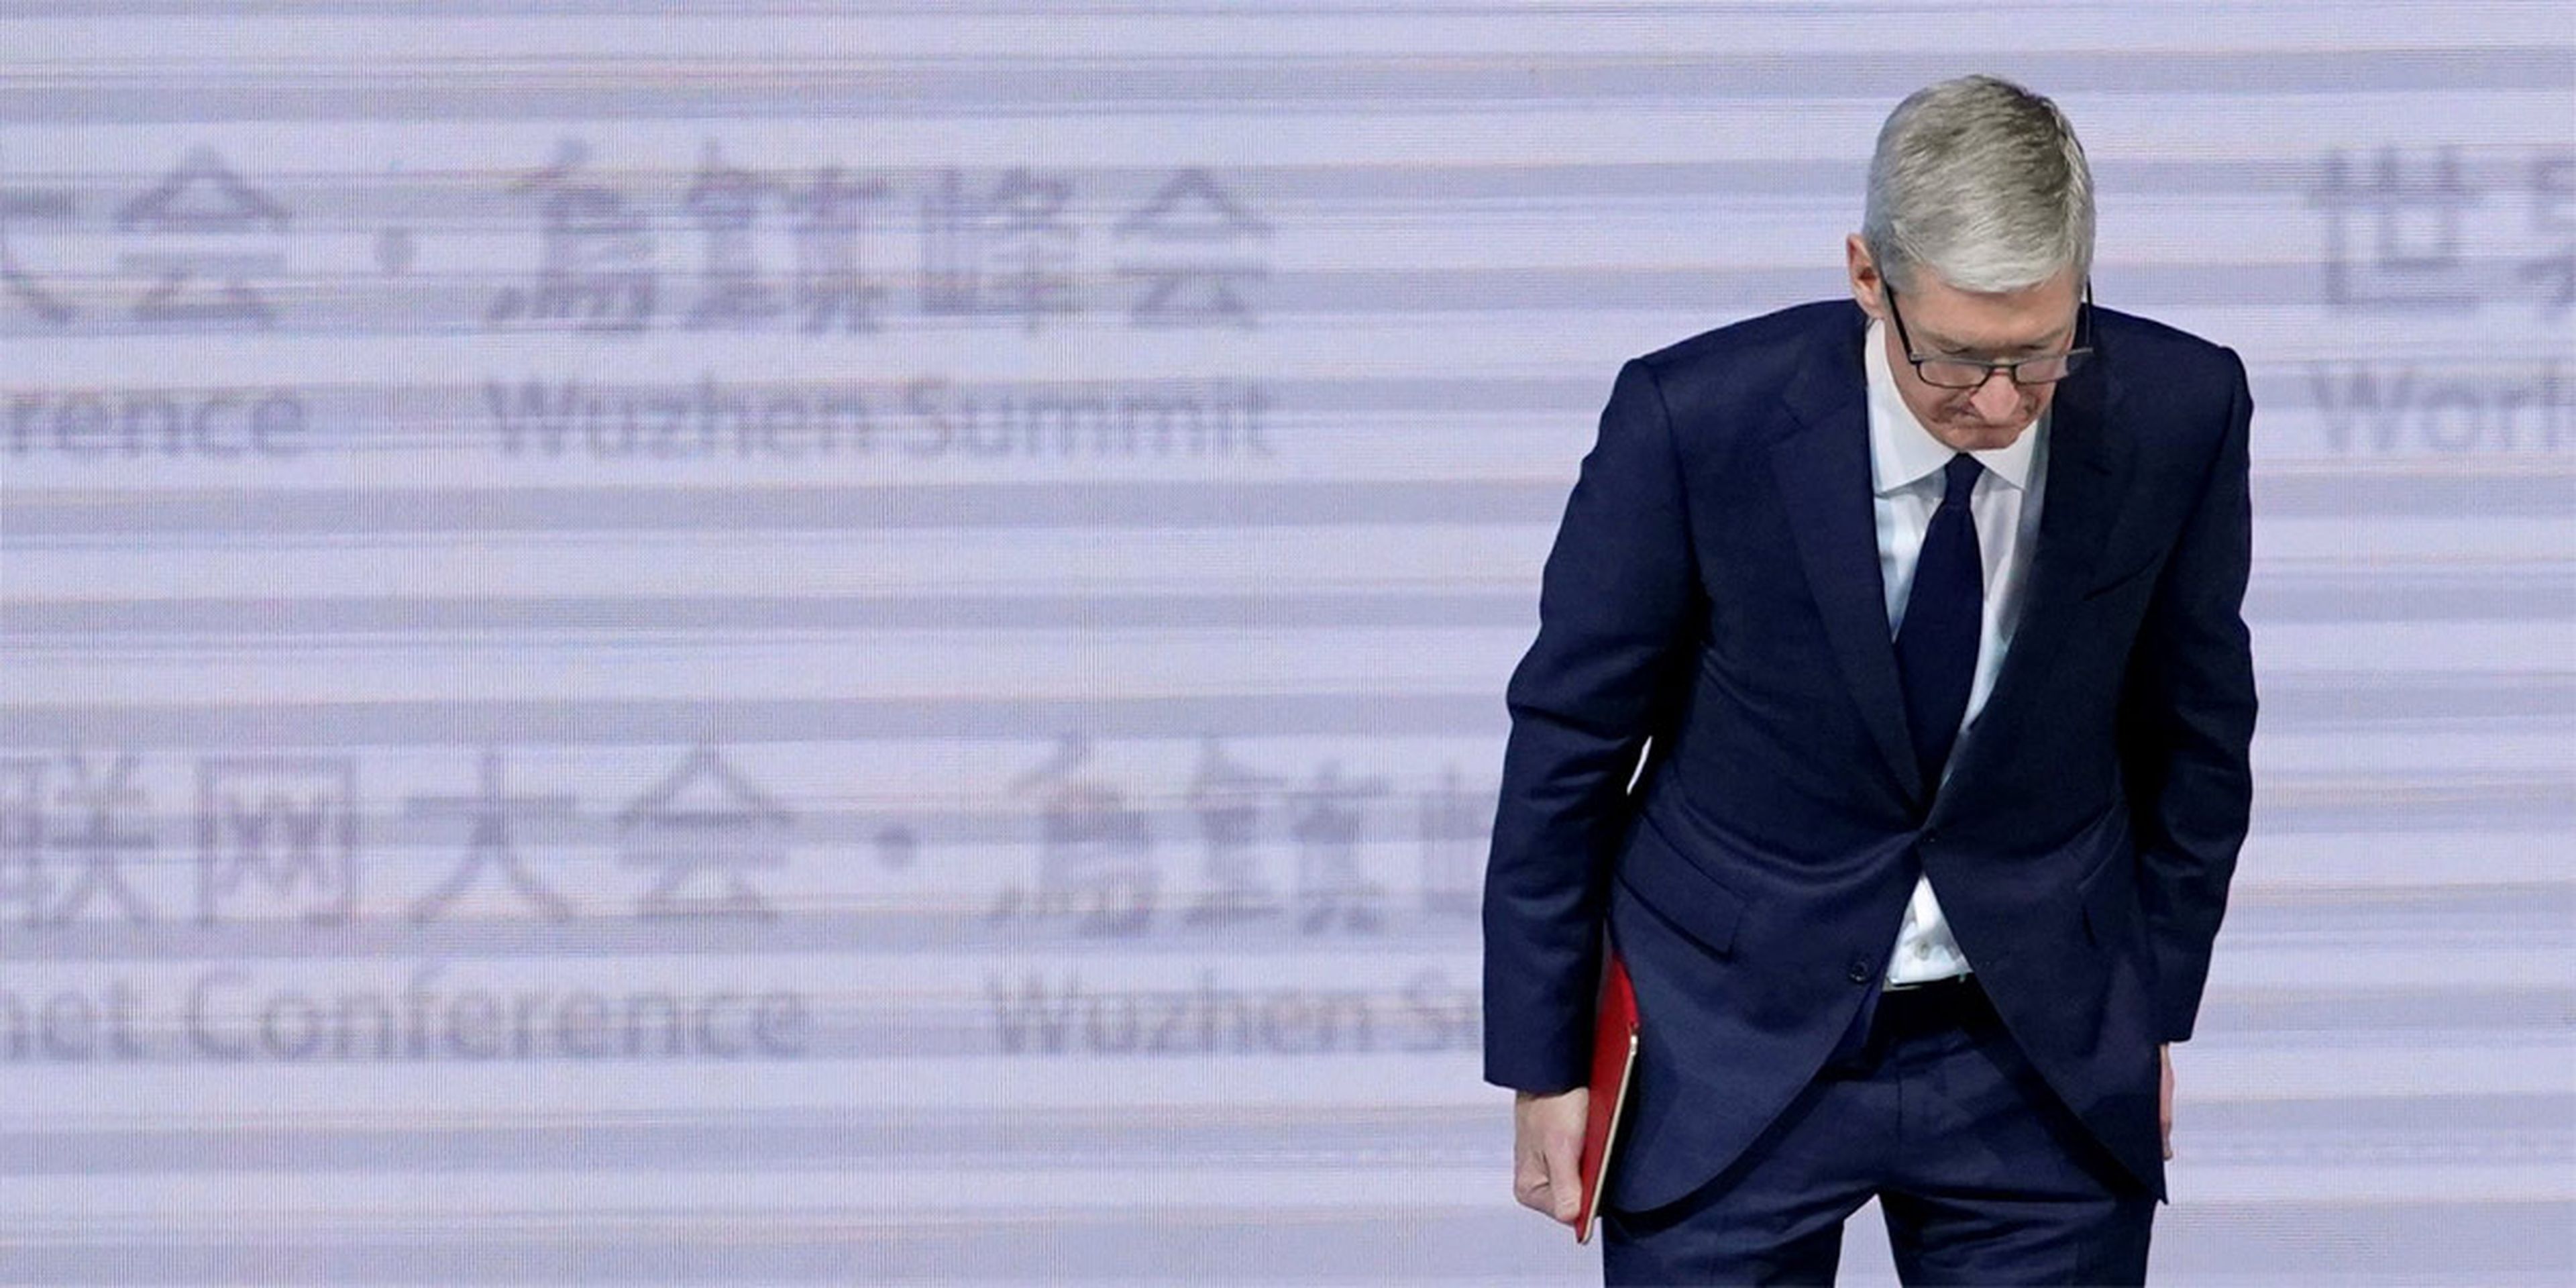 El CEO de apple, Tim Cook, se inclina durante la ceremonia de apertura de la cuarta conferencia mundial de internet en Wuzhen.